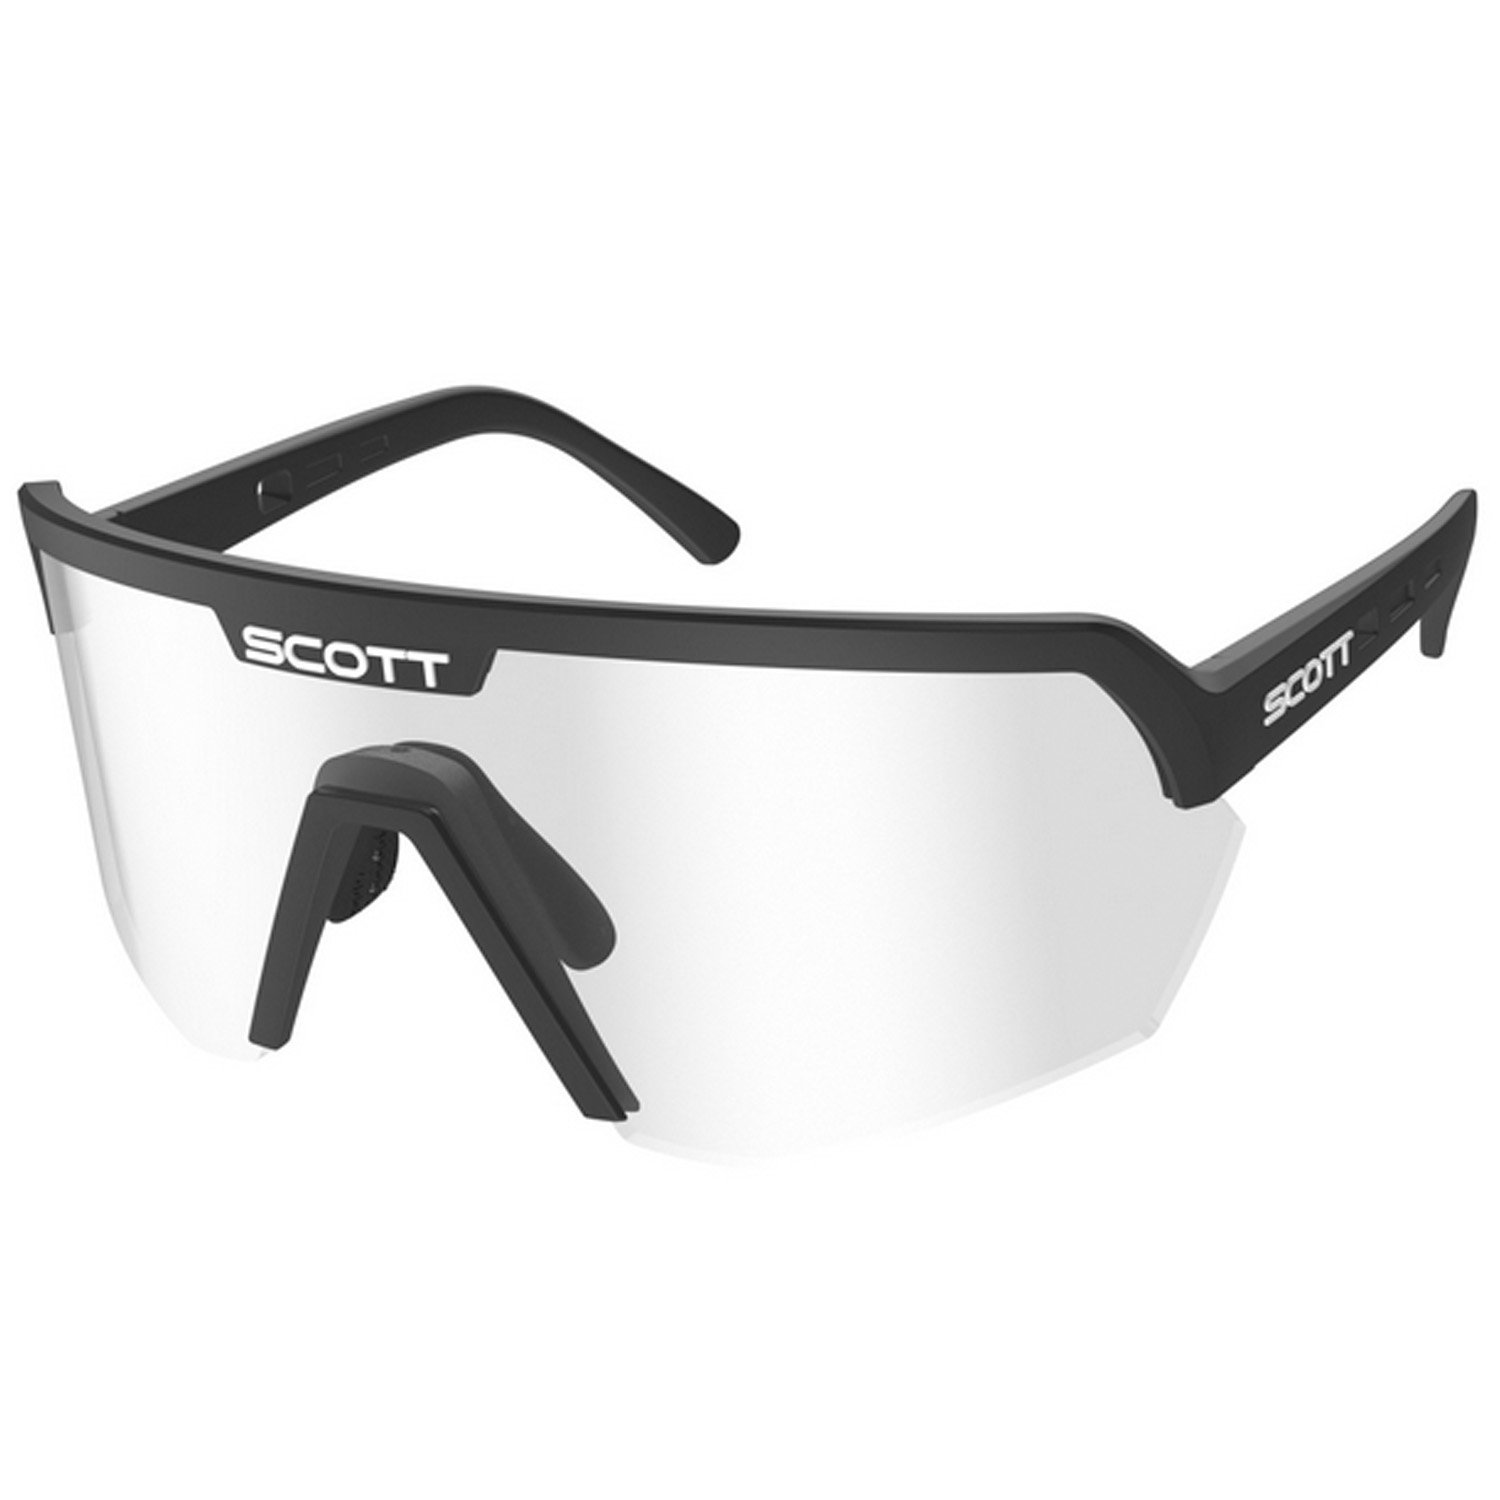 Очки велосипдные SCOTT Sport Shield, black clear, ES281188-0001043 очки велосипедные scott spur ls black matt grey light sensitive clear 273337 0135304